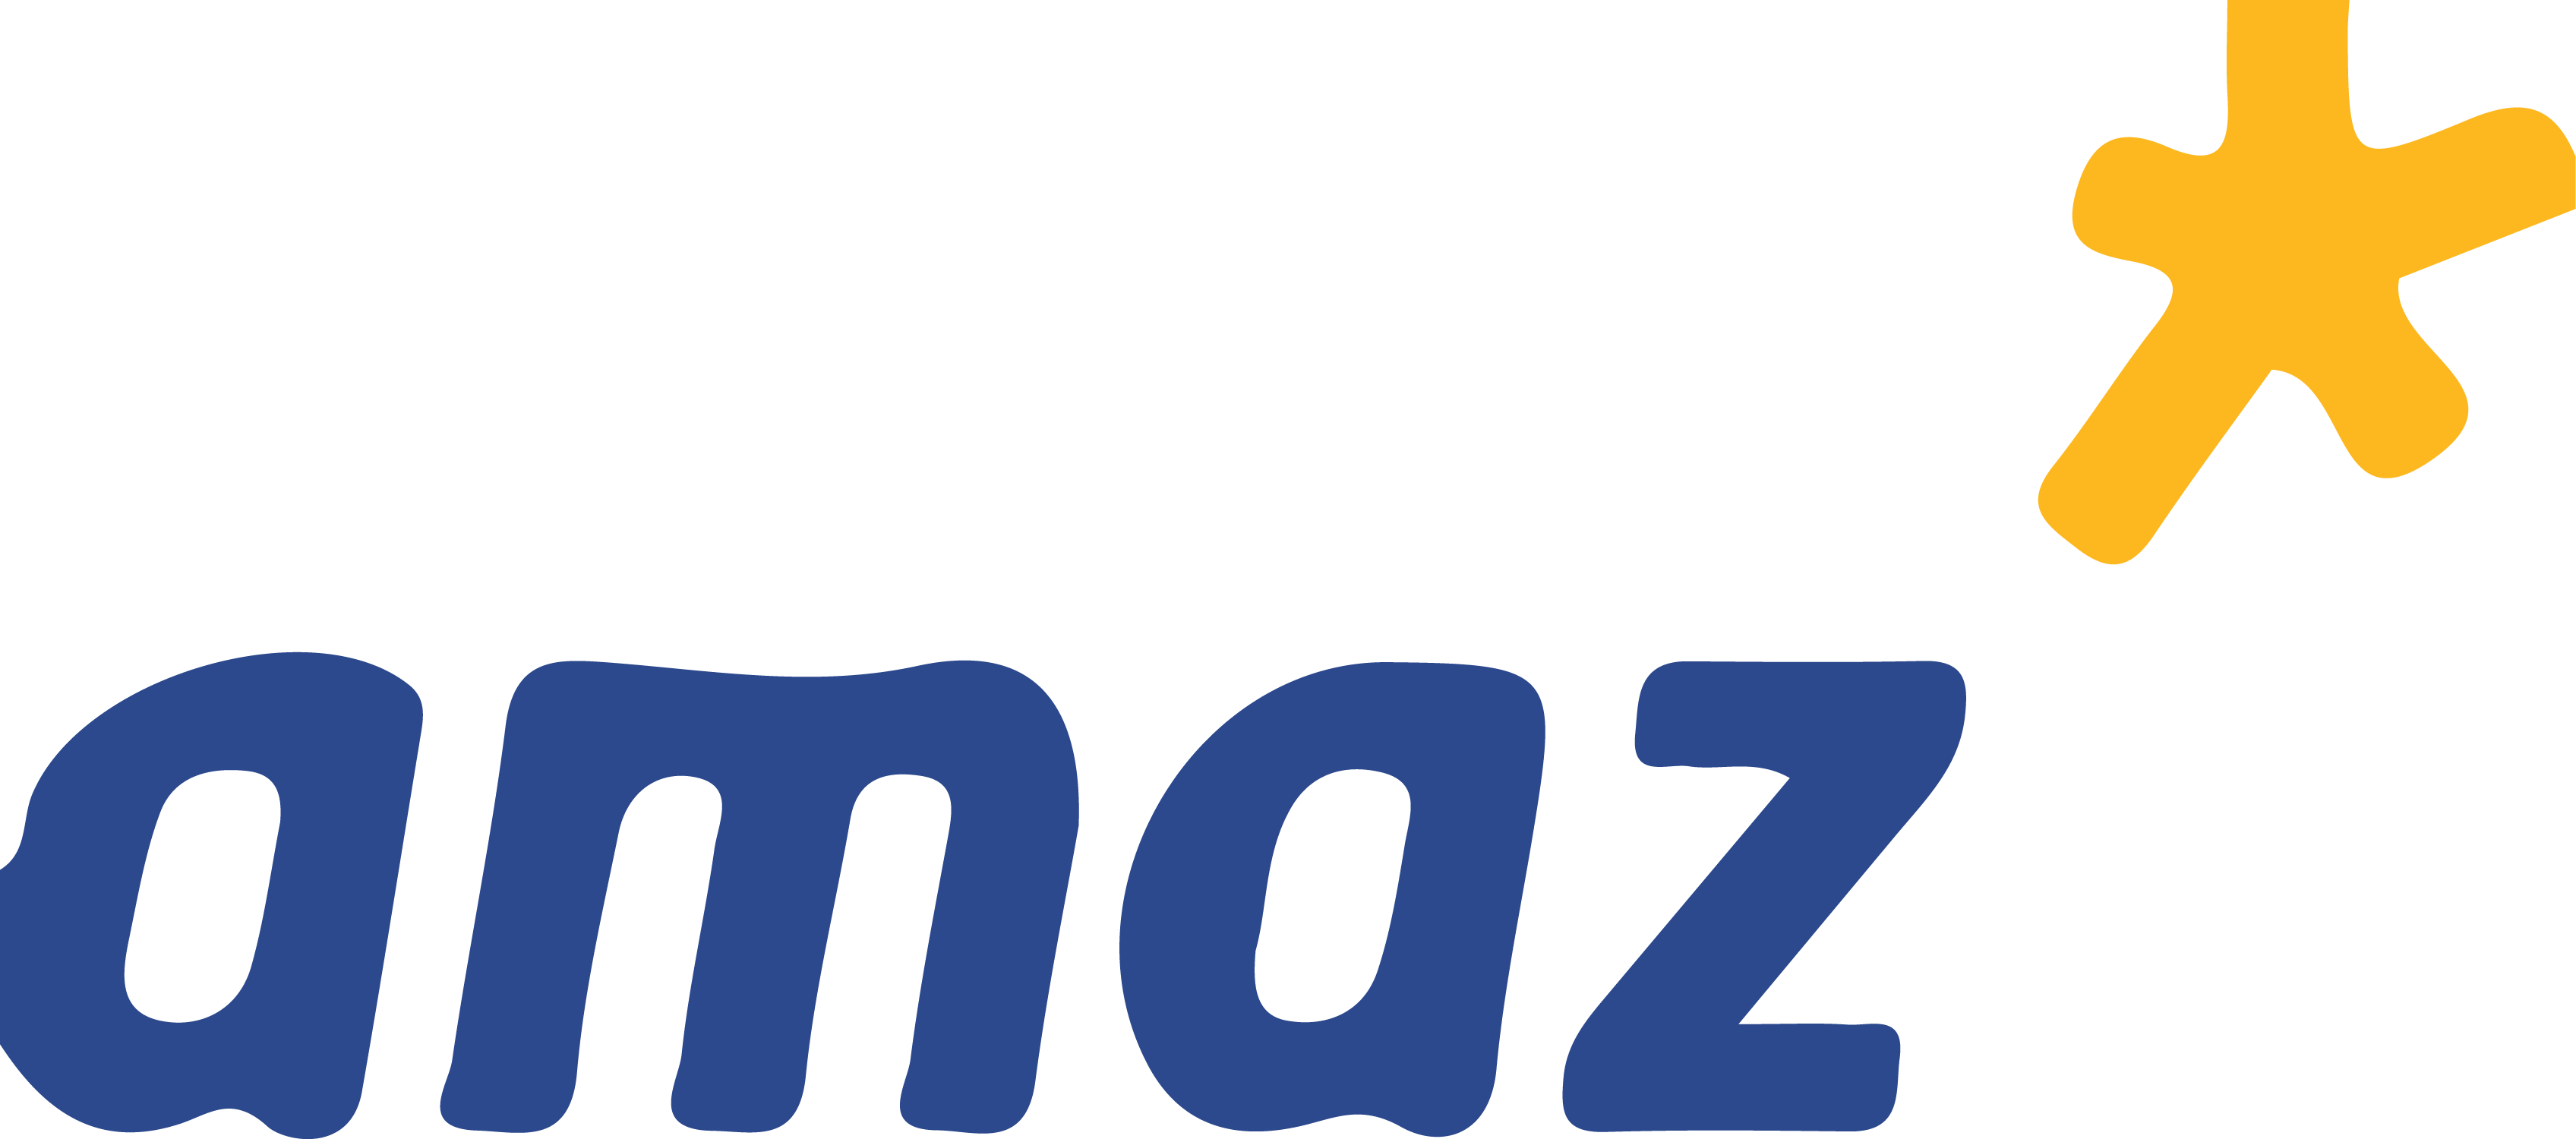 Amaz-1